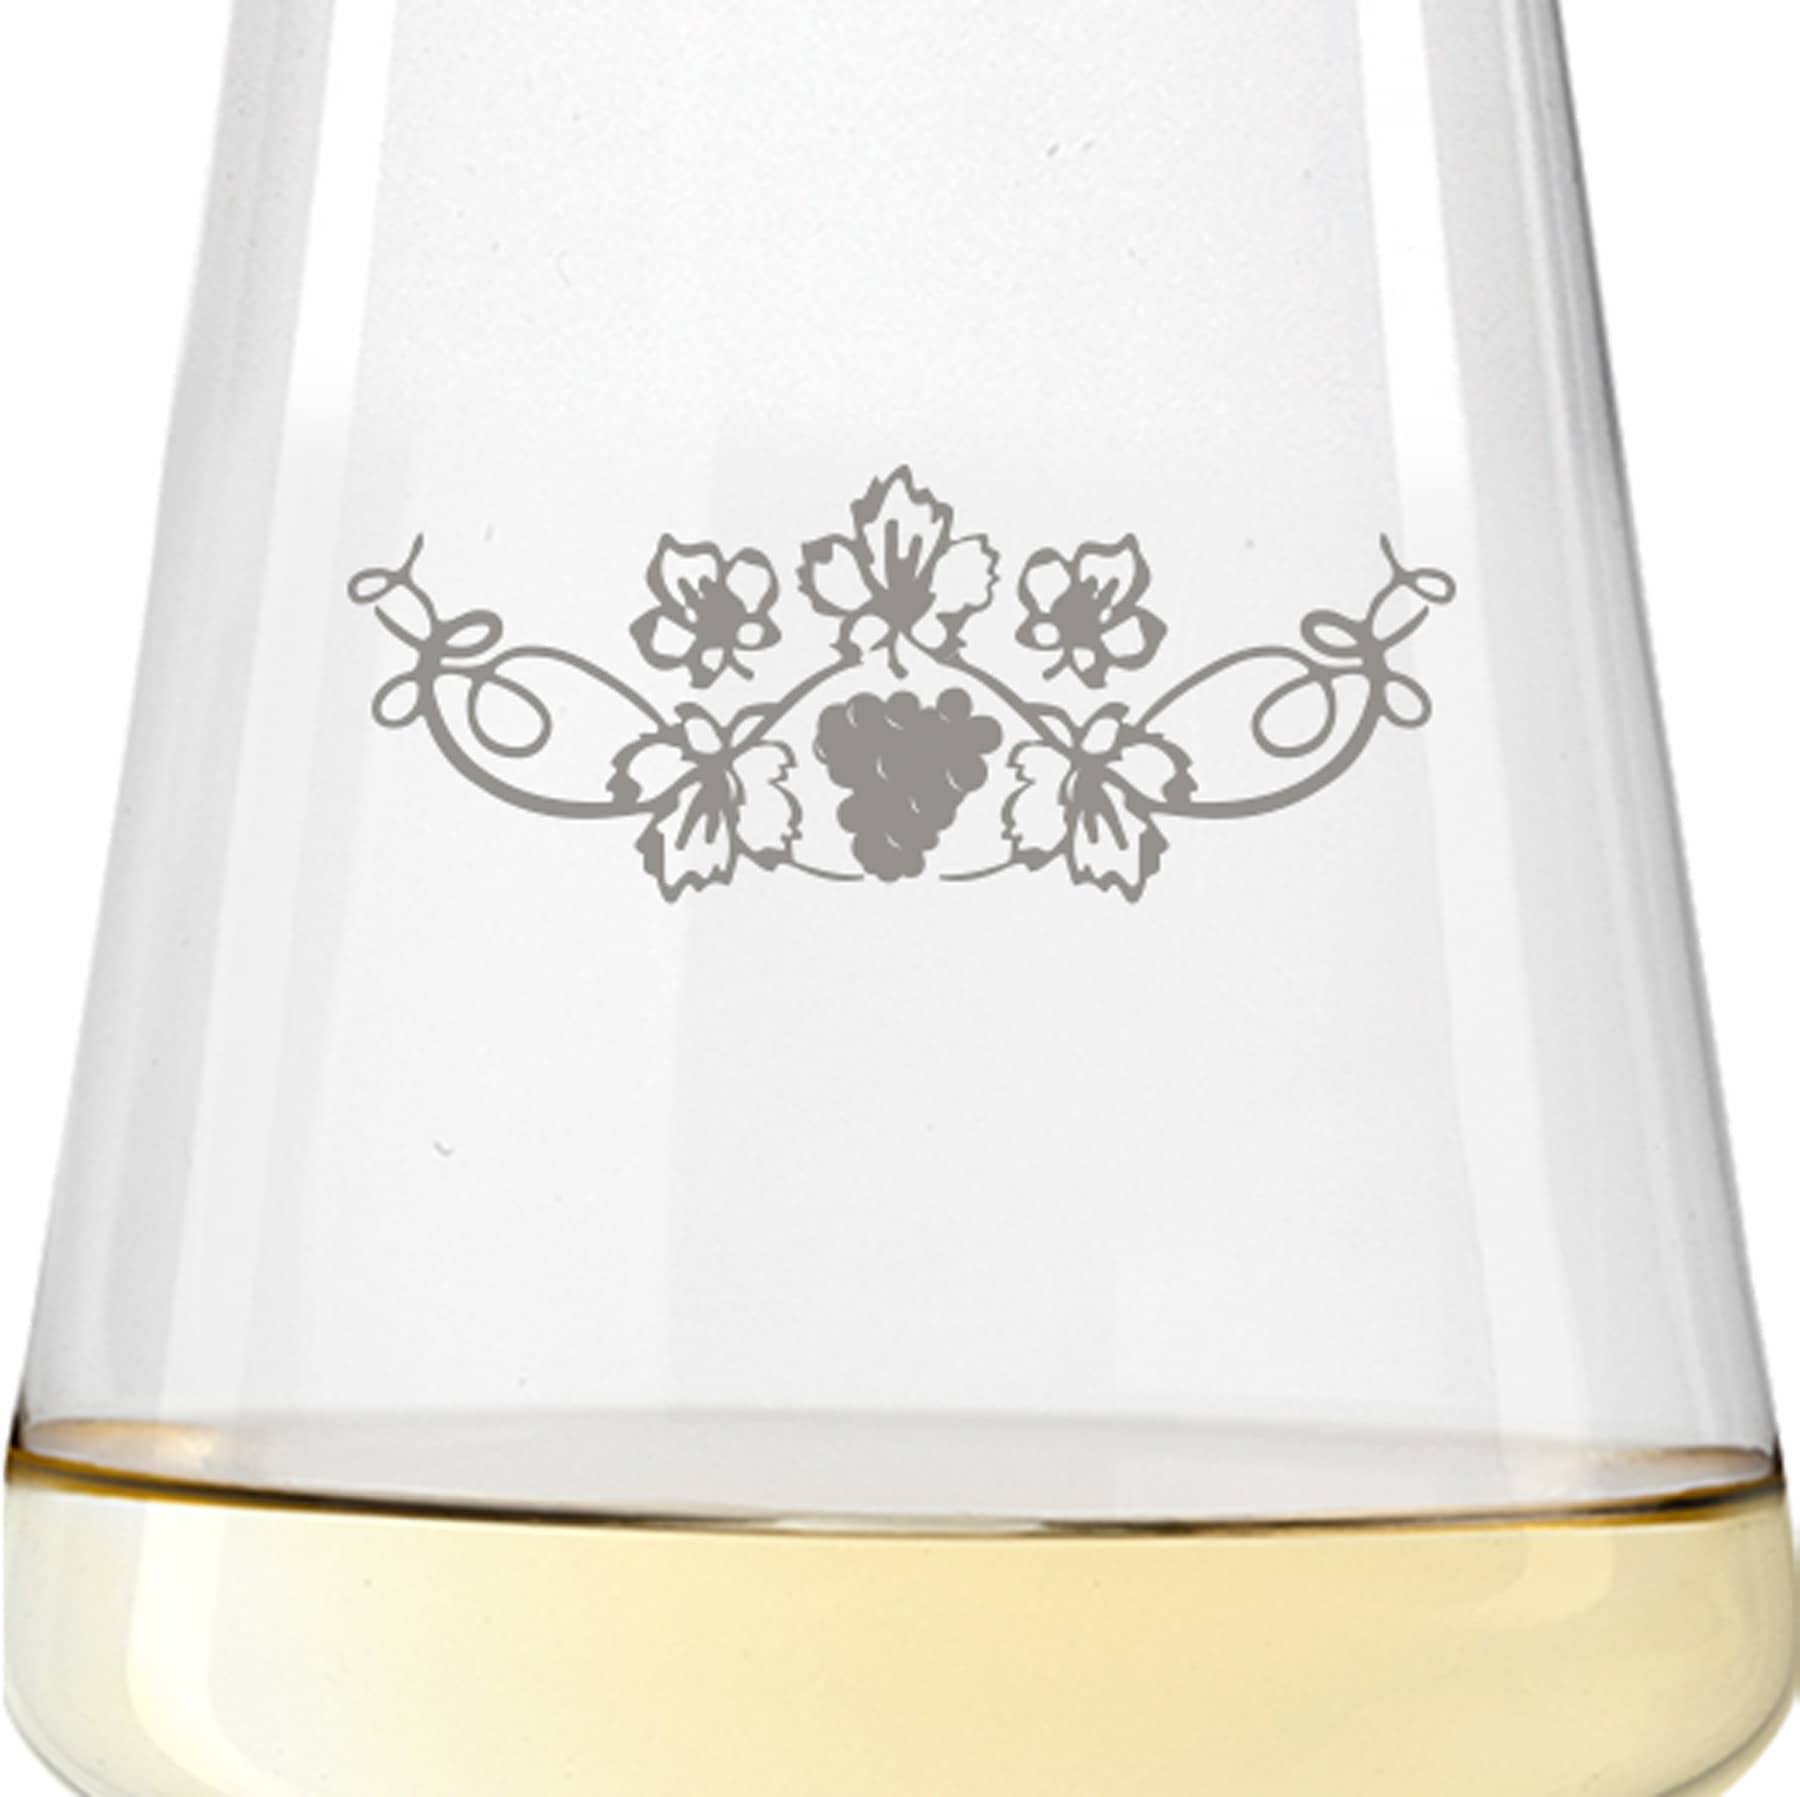 2x Leonardo Weißweinglas mit Namen oder Wunschtext graviert, 560ml, PUCCINI, personalisiertes Premium Weinglas in Gastroqualität, (Weinrebe)